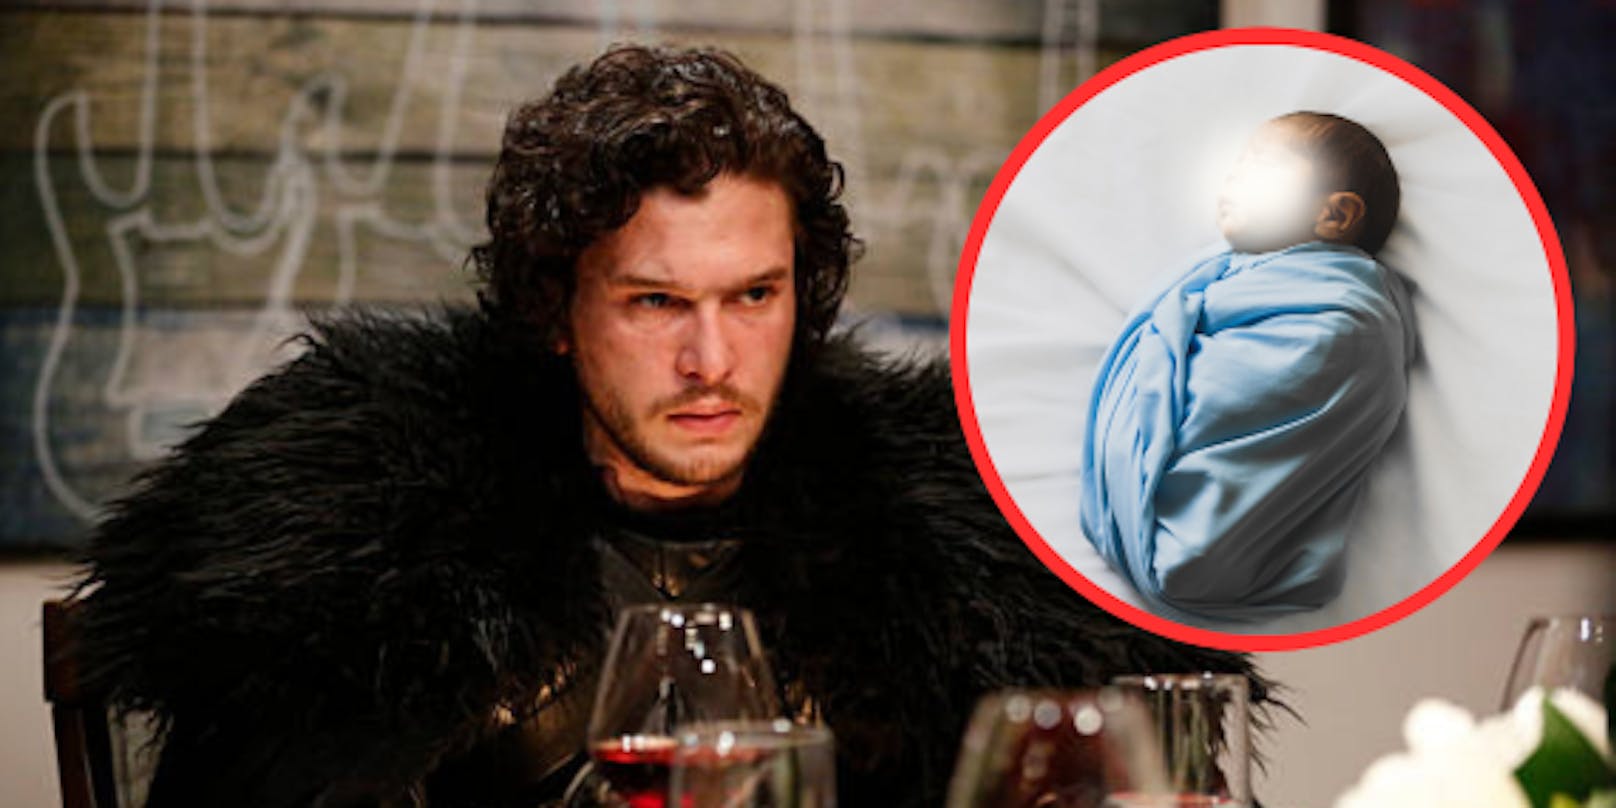 Süße Neuigkeiten - "Jon Snow" alias Kit Harington wurde Vater einer kleinen Tochter.